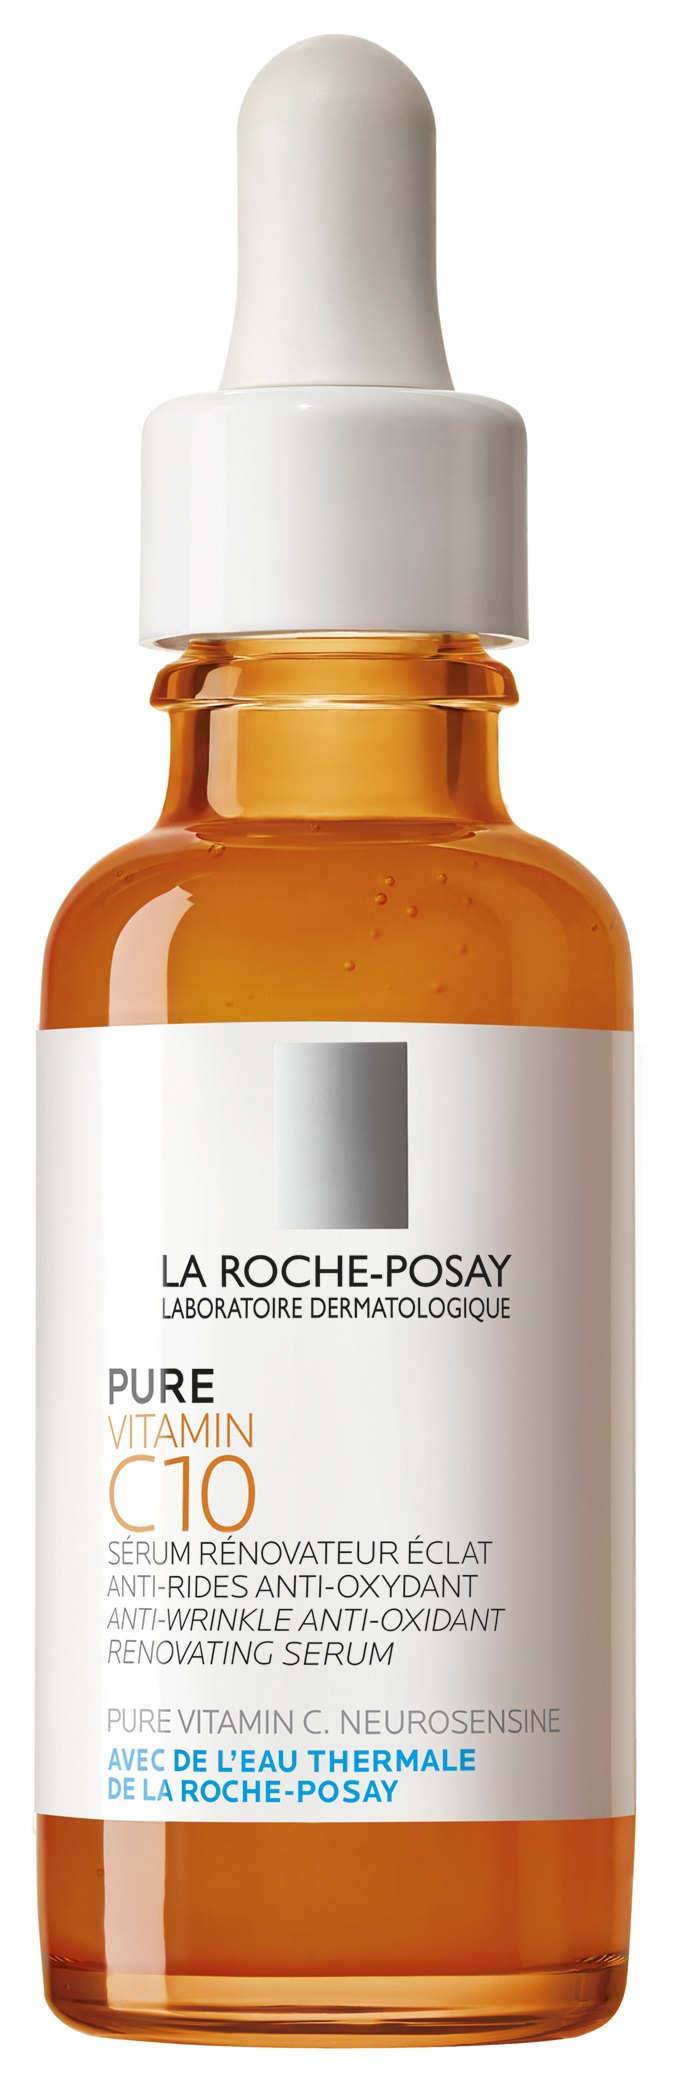 LA ROCHE-POSAY Pure Vitamin C10 szérum 30 ml